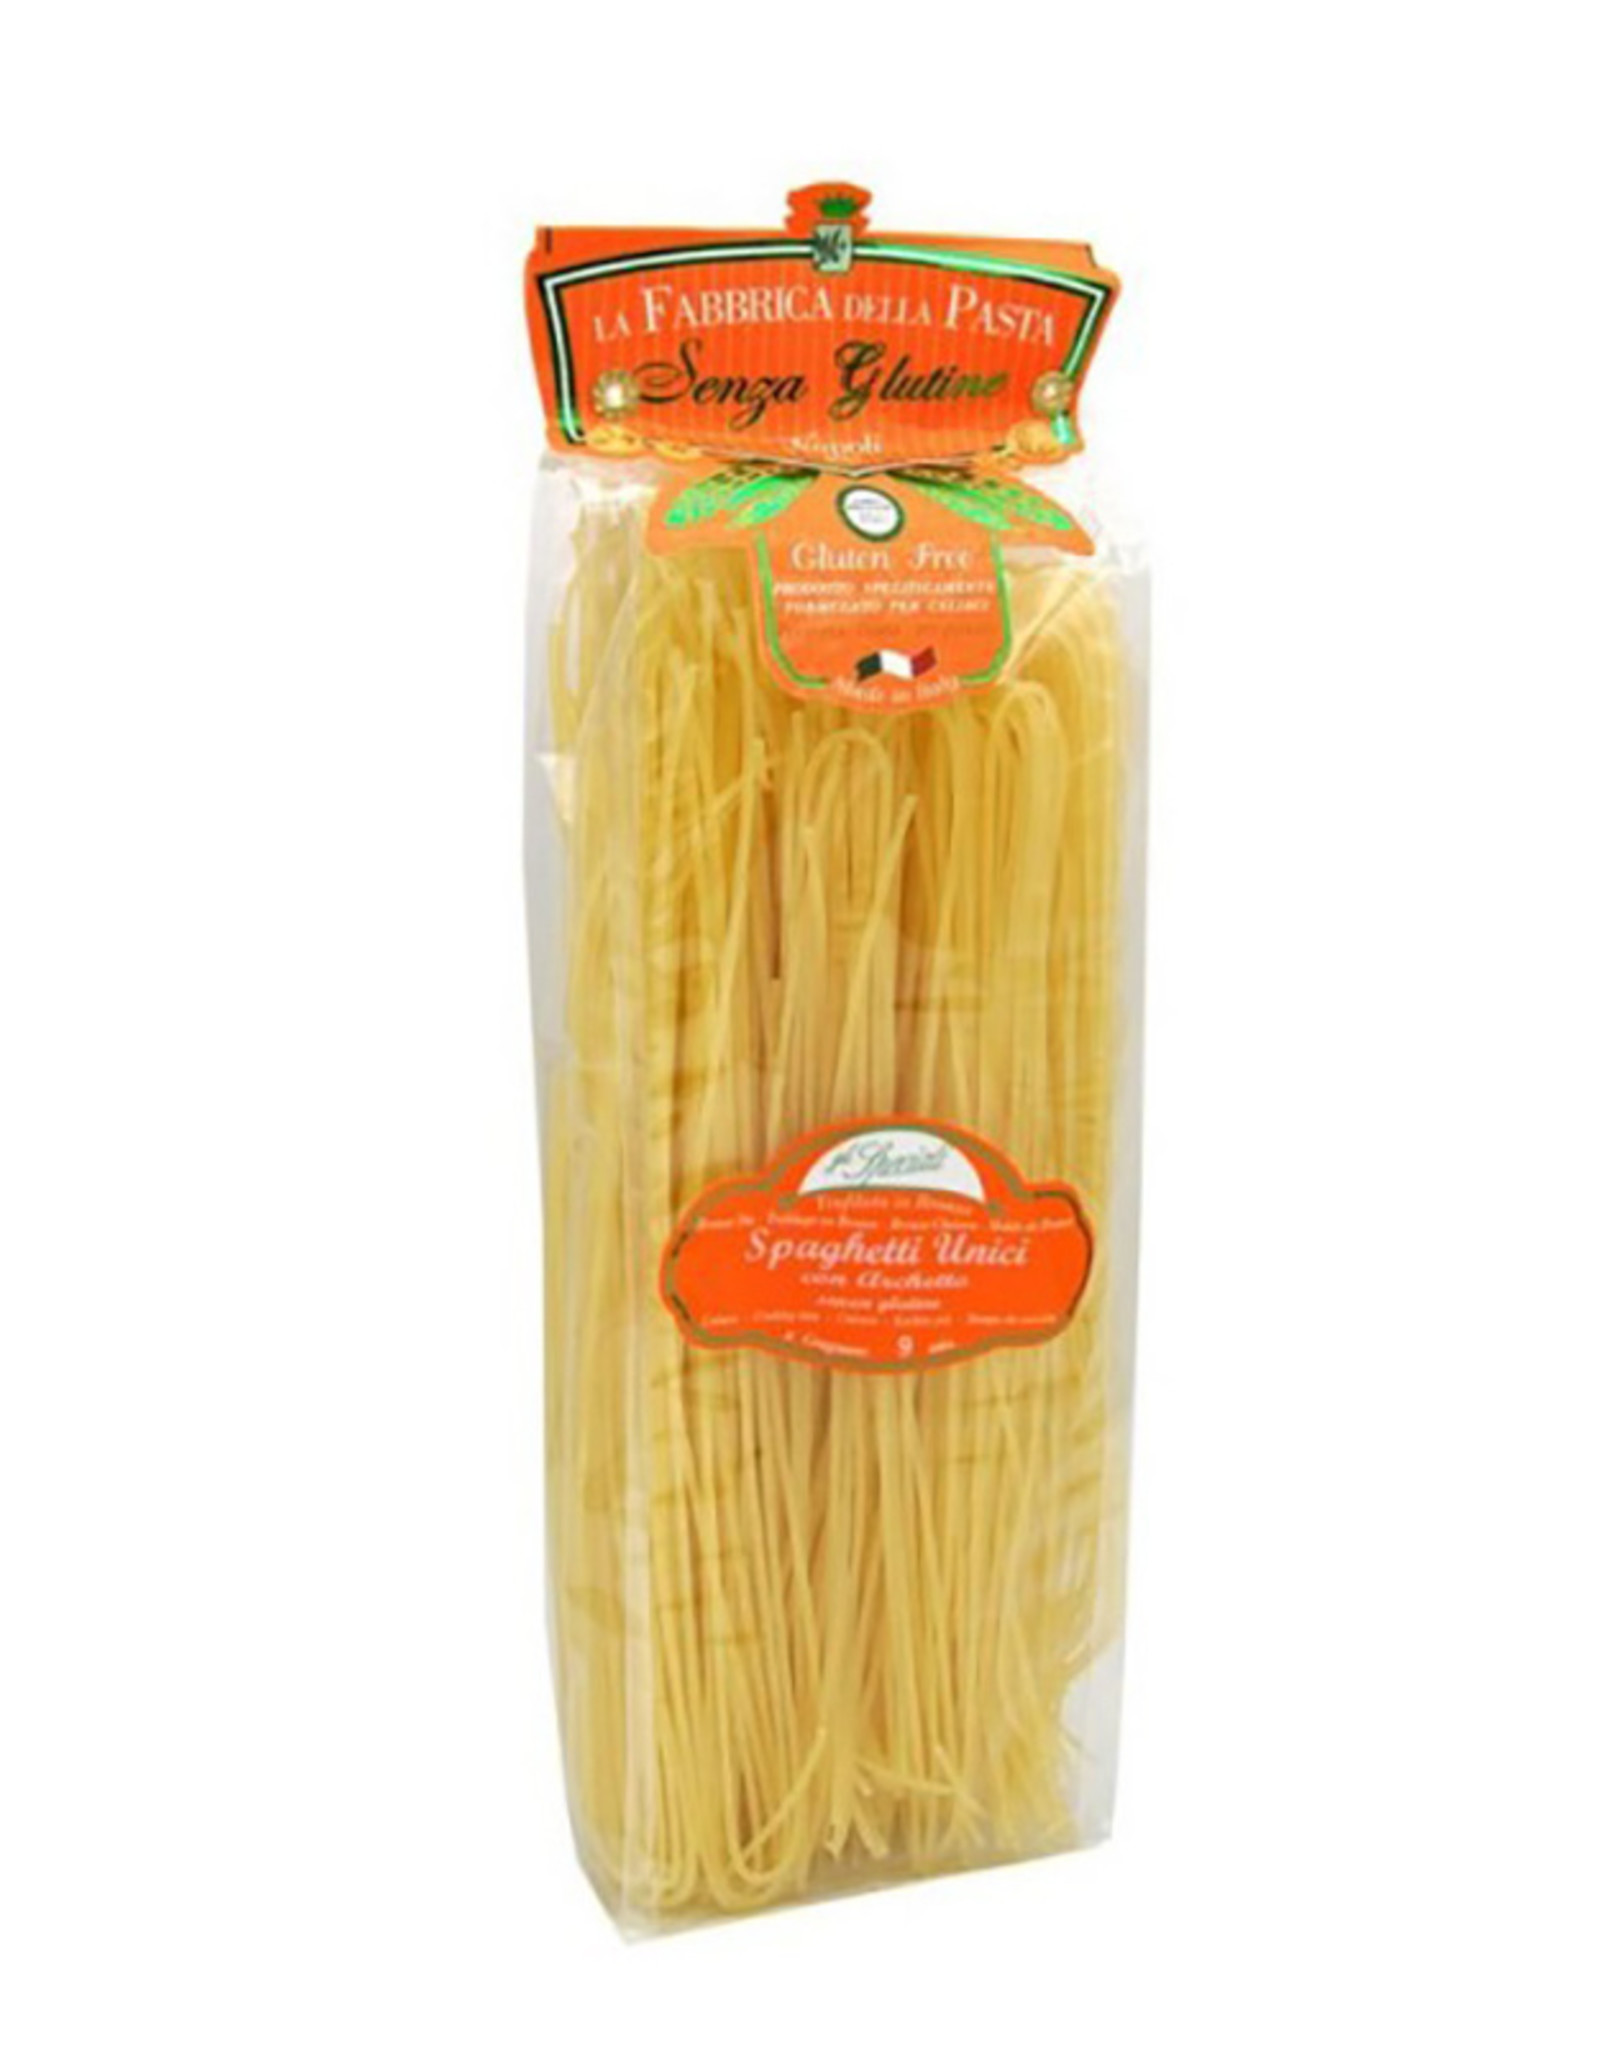 La Fabbrica della Pasta di Gragnano Pasta di Gragnano - Spaghetti di Gragnano - GLUTEN FREE